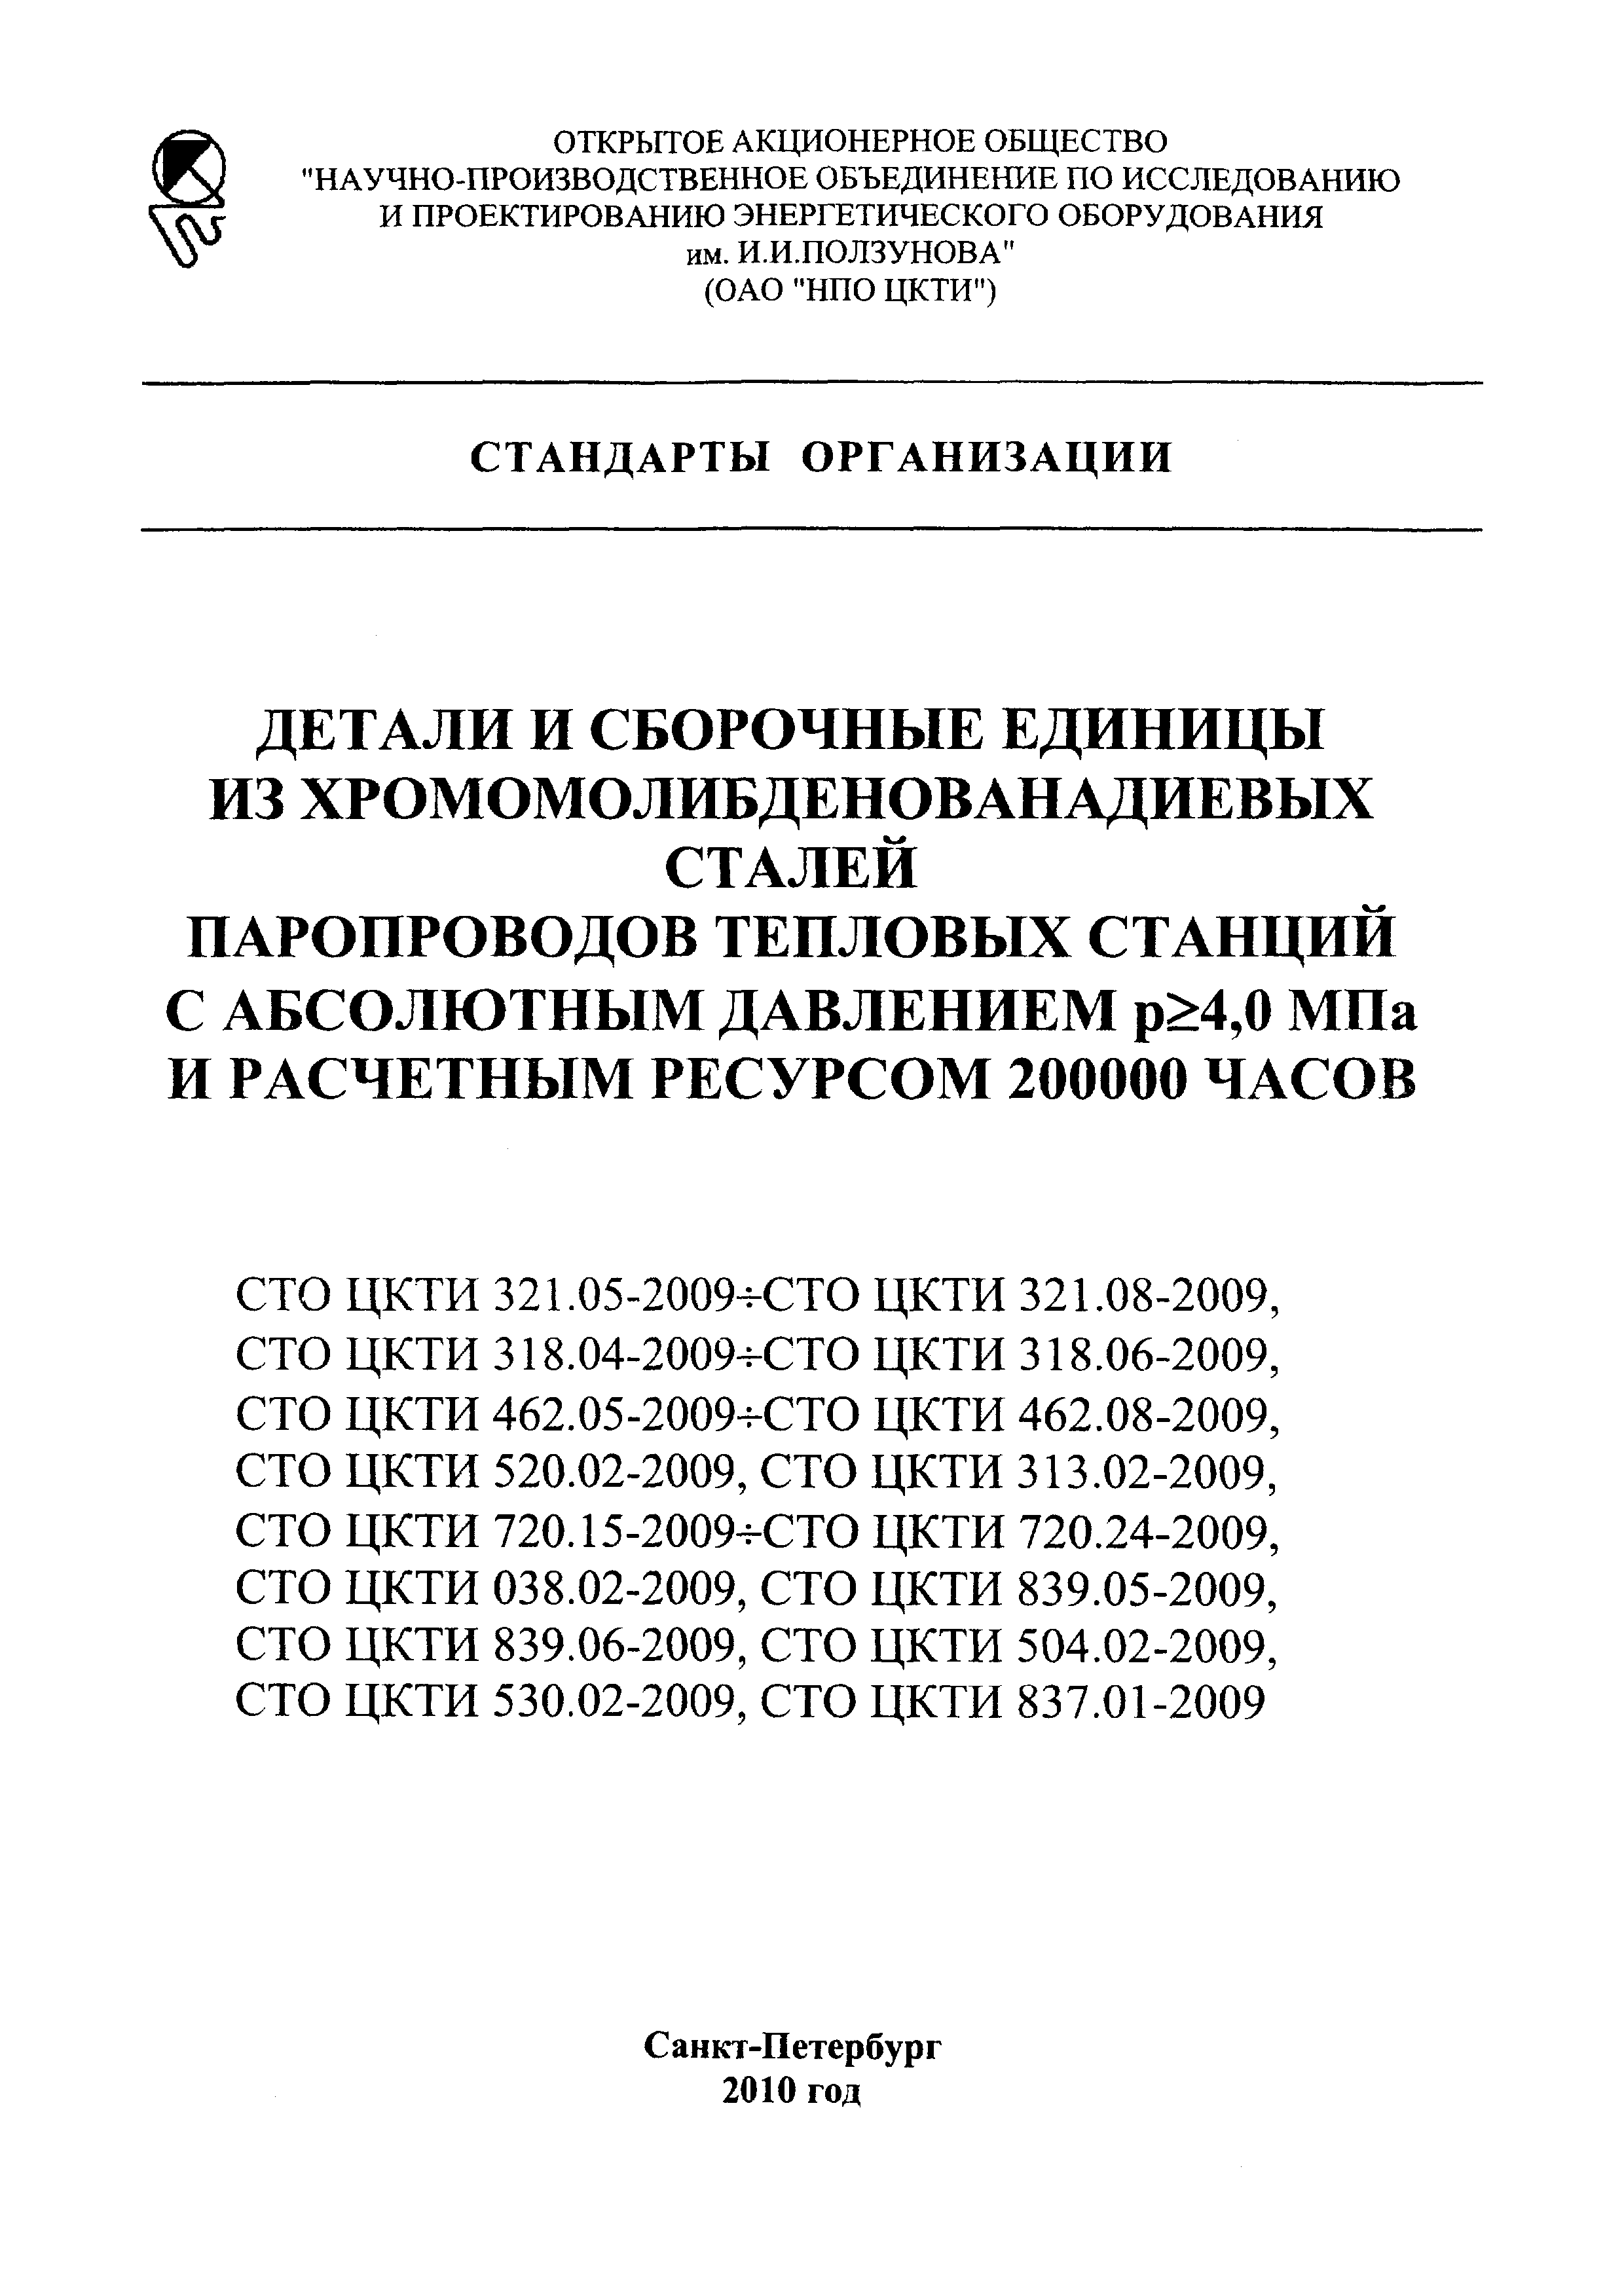 СТО ЦКТИ 720.17-2009